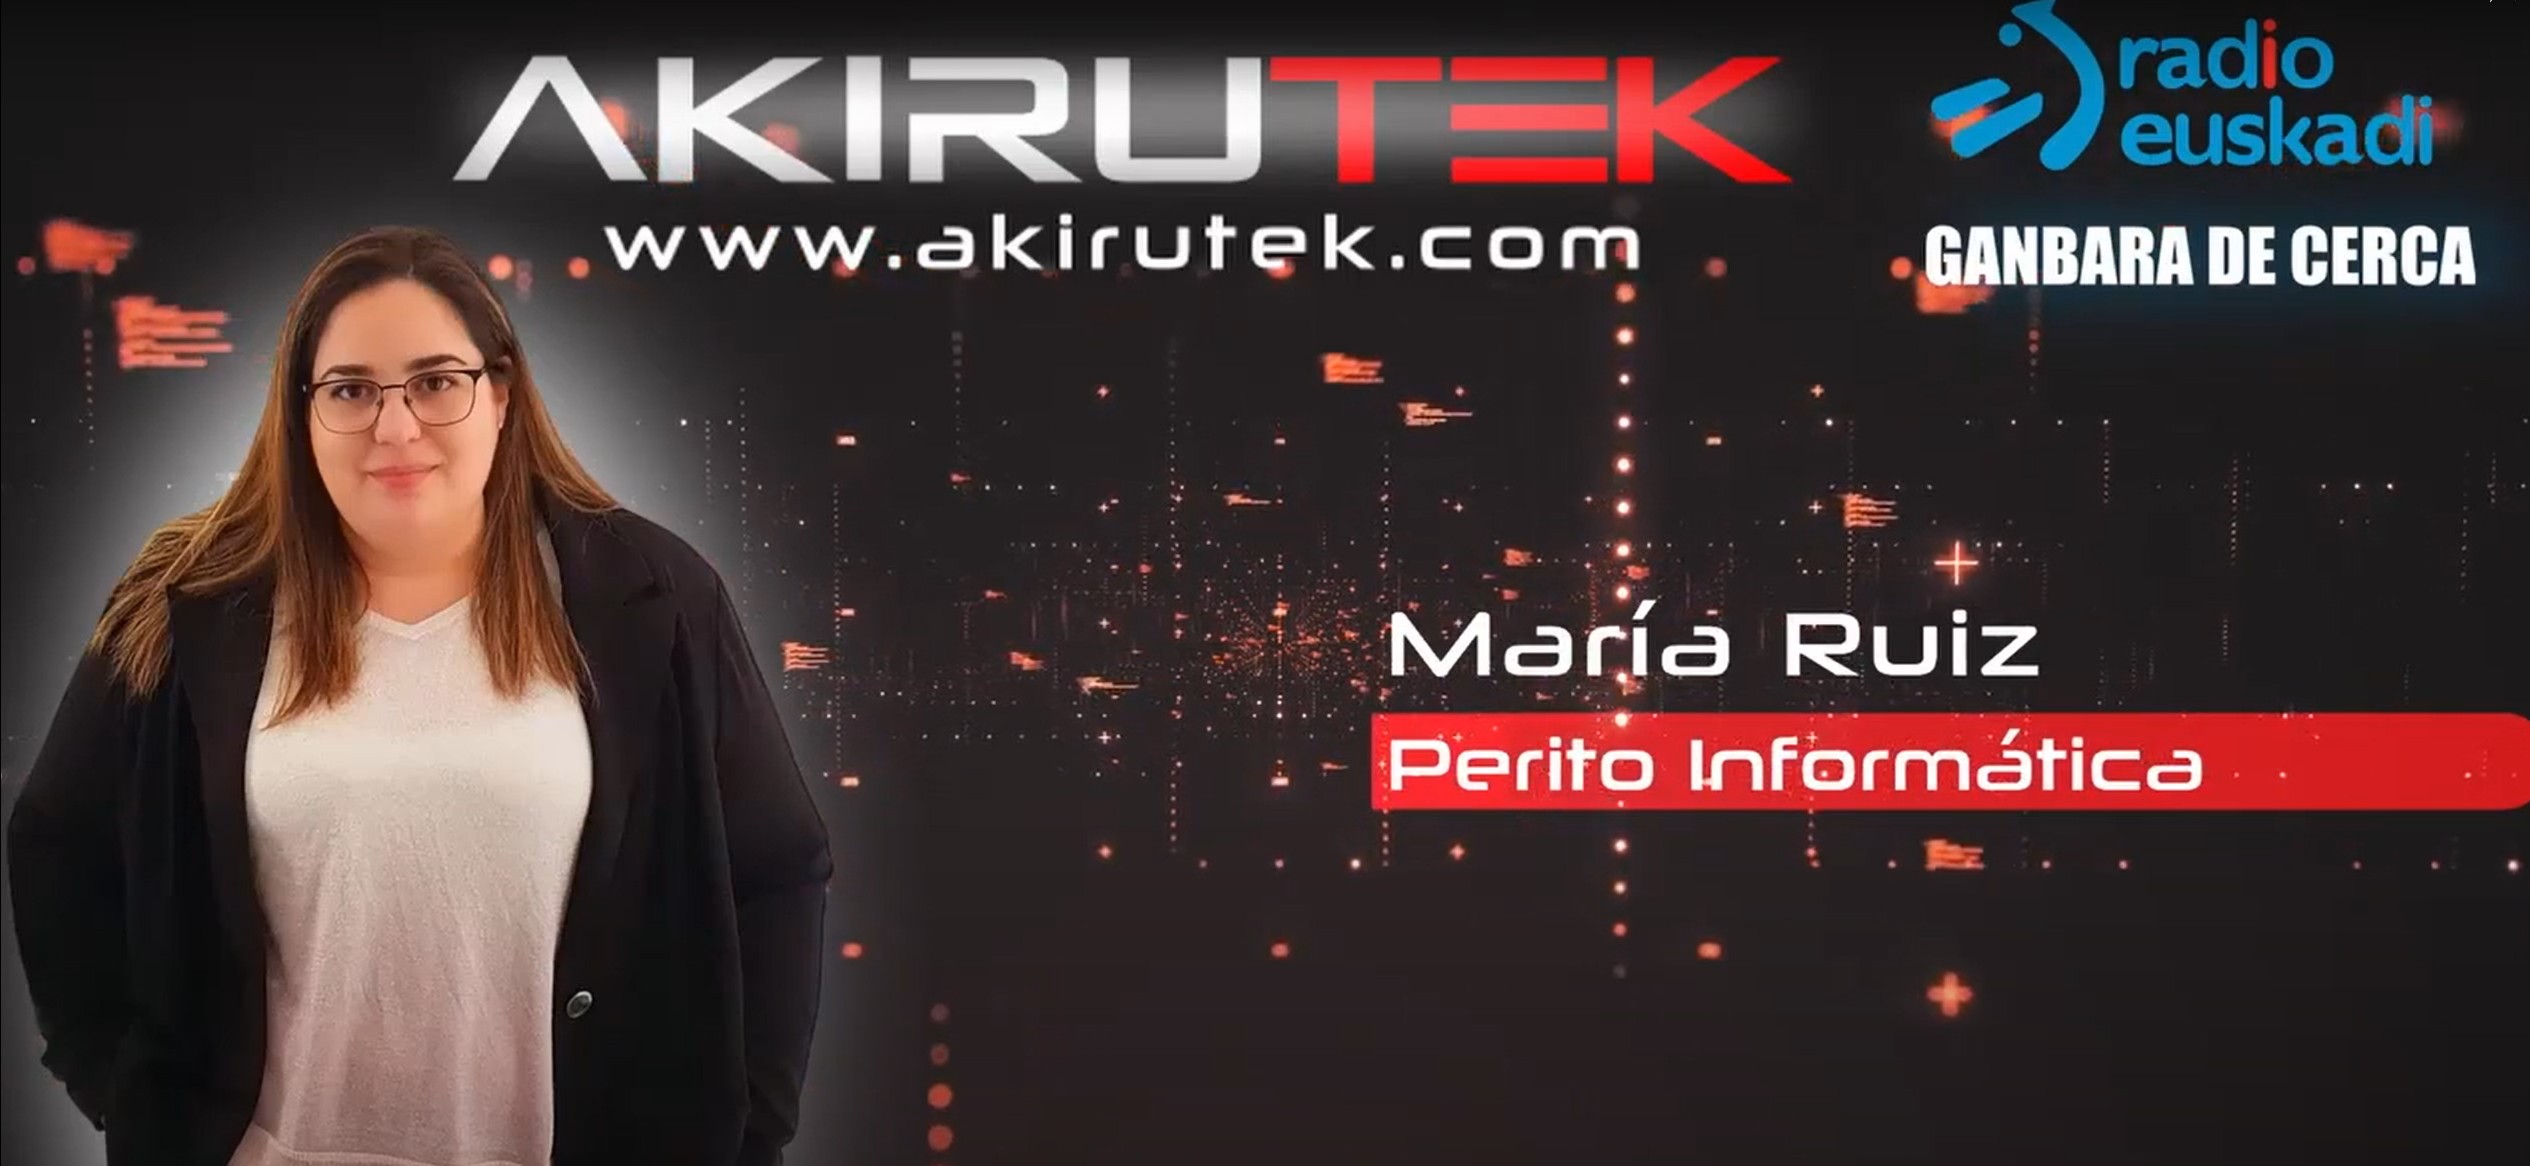 En este momento estás viendo Akirutek en Eitb Radio Euskadi – Ganbara de Cerca  – 2